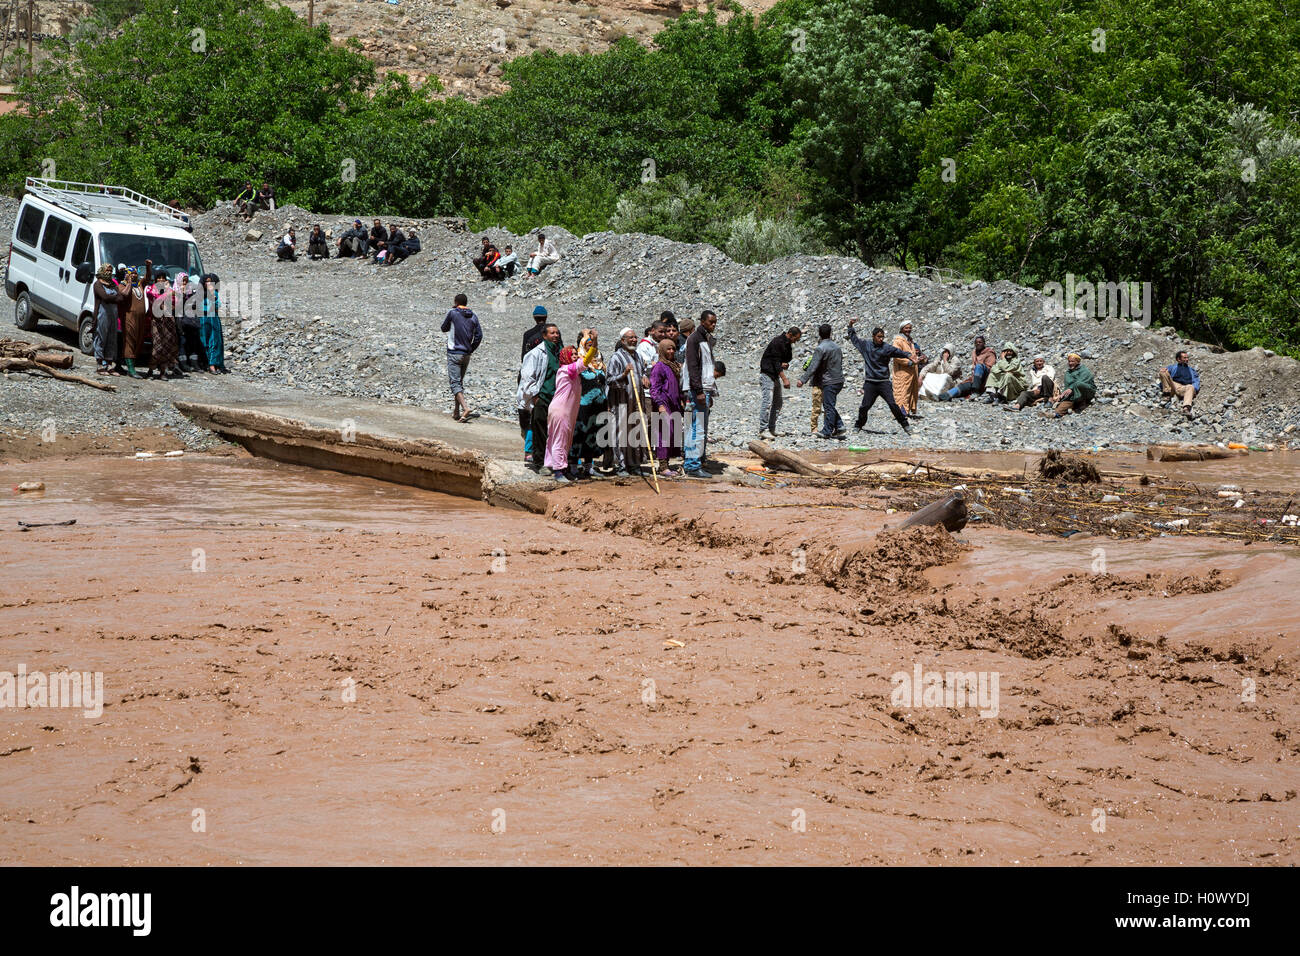 Dades Gorge, Marocco. Inondazione impedisce il passaggio dal villaggio (sfondo, al di fuori della vista) alla strada principale. Foto Stock